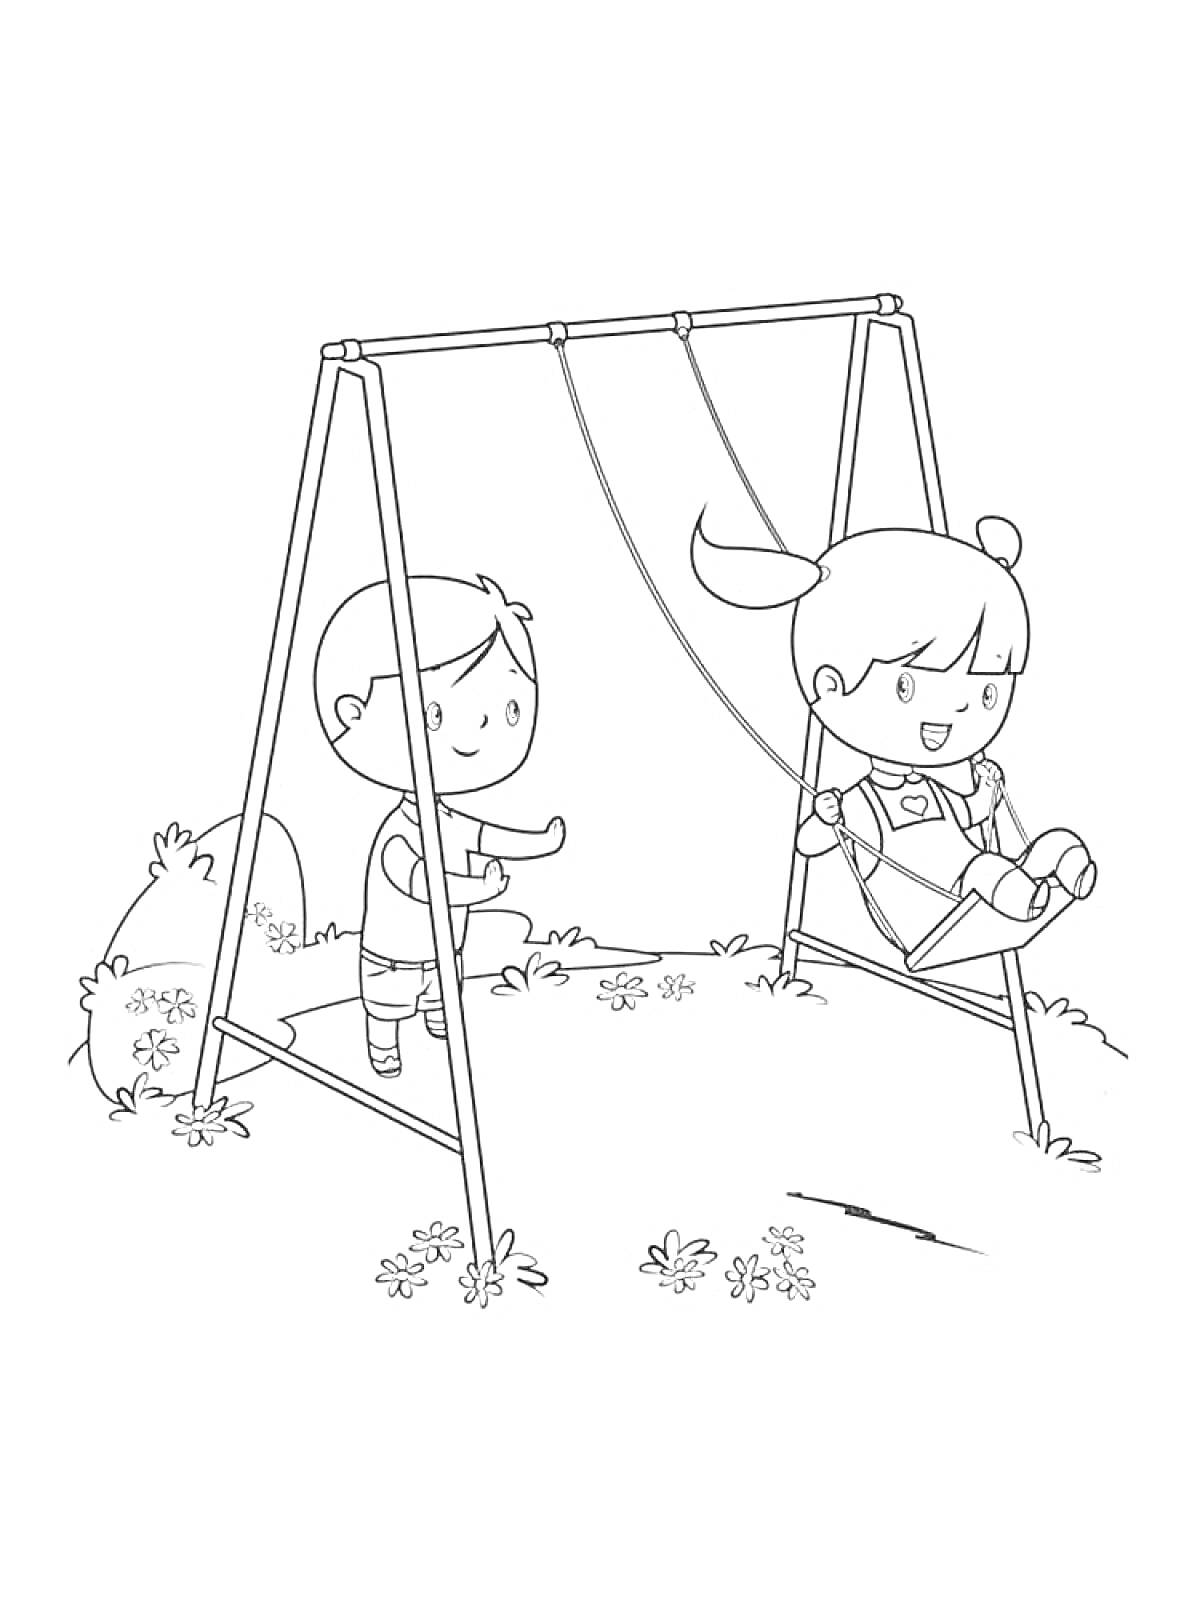 Раскраска Дети играют на качелях в парке, мальчик толкает девочку на качелях, на заднем плане цветы и кусты